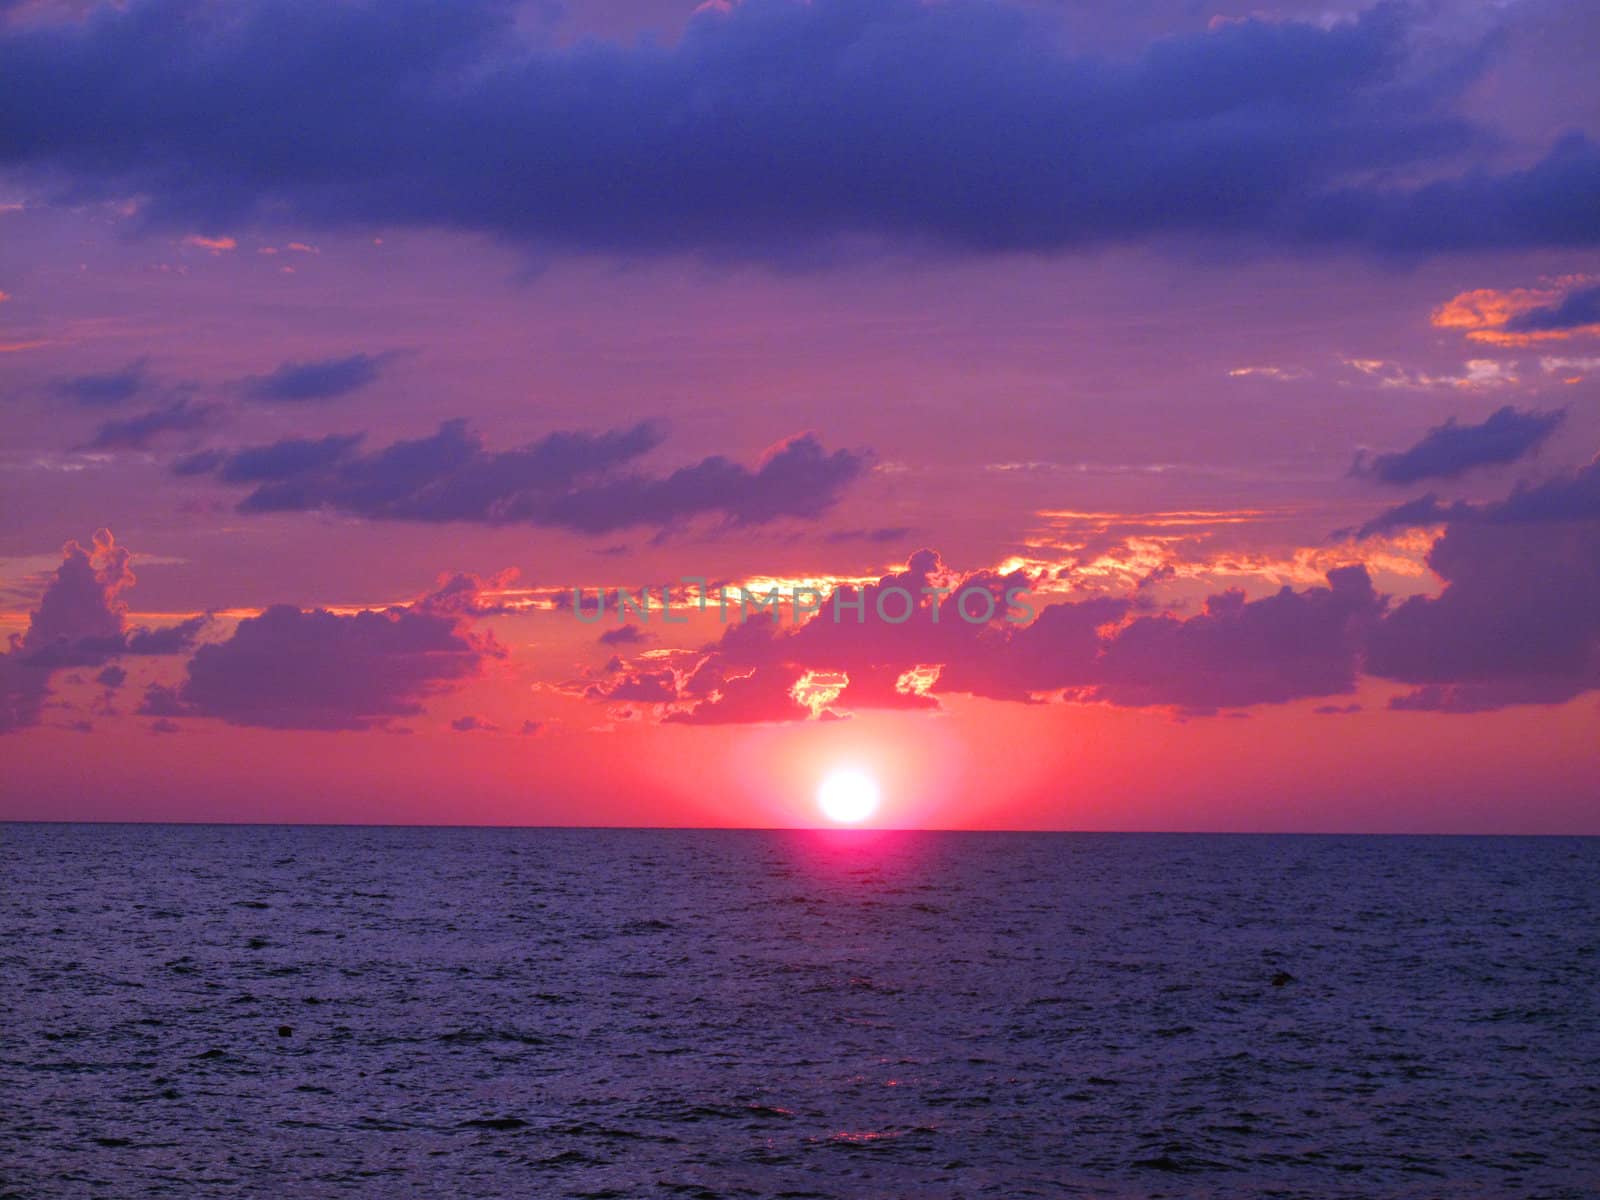 Sunset on Black sea, Russia. Taken on August 2010                         